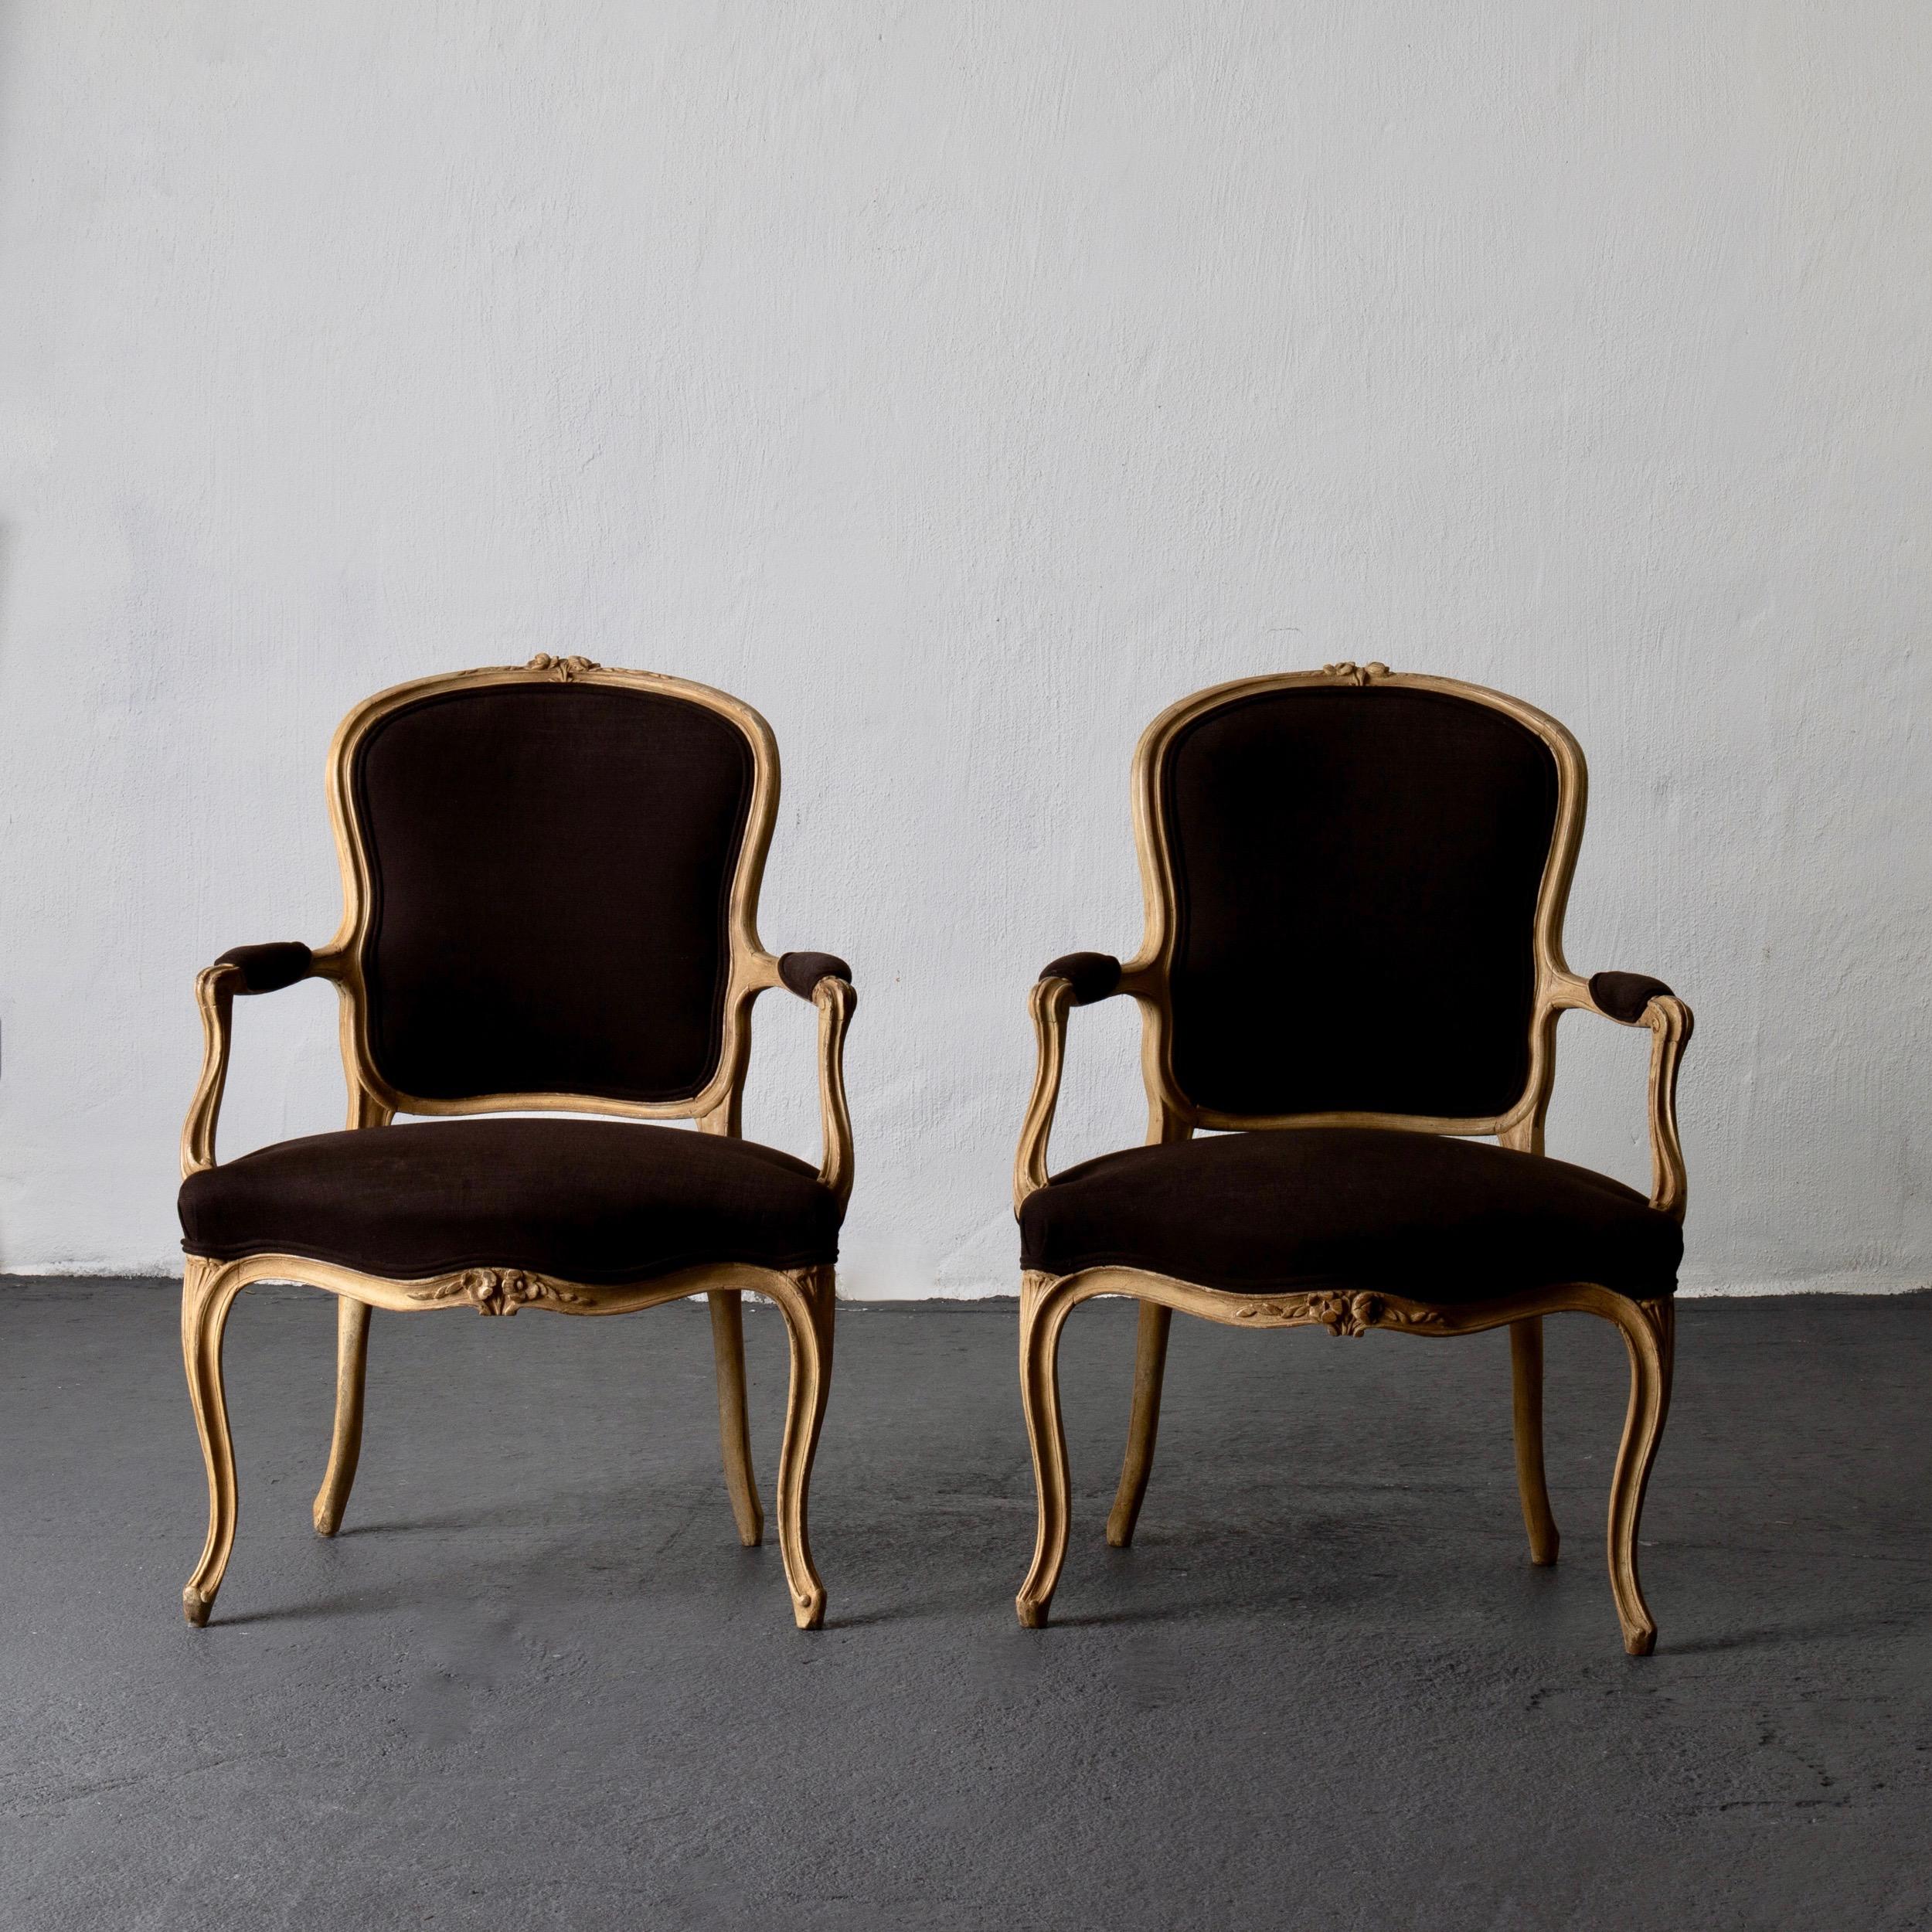 Sessel Paar schwedischen Rokoko gelb braun Schweden. Ein Paar Sessel aus der Zeit des schwedischen Rokoko (1750-1775). Der Rahmen ist in Heugelb lackiert. Details in Rosen und S-Formen geschnitzt. Gepolsterte Rücken- und Armlehnen aus gebürstetem